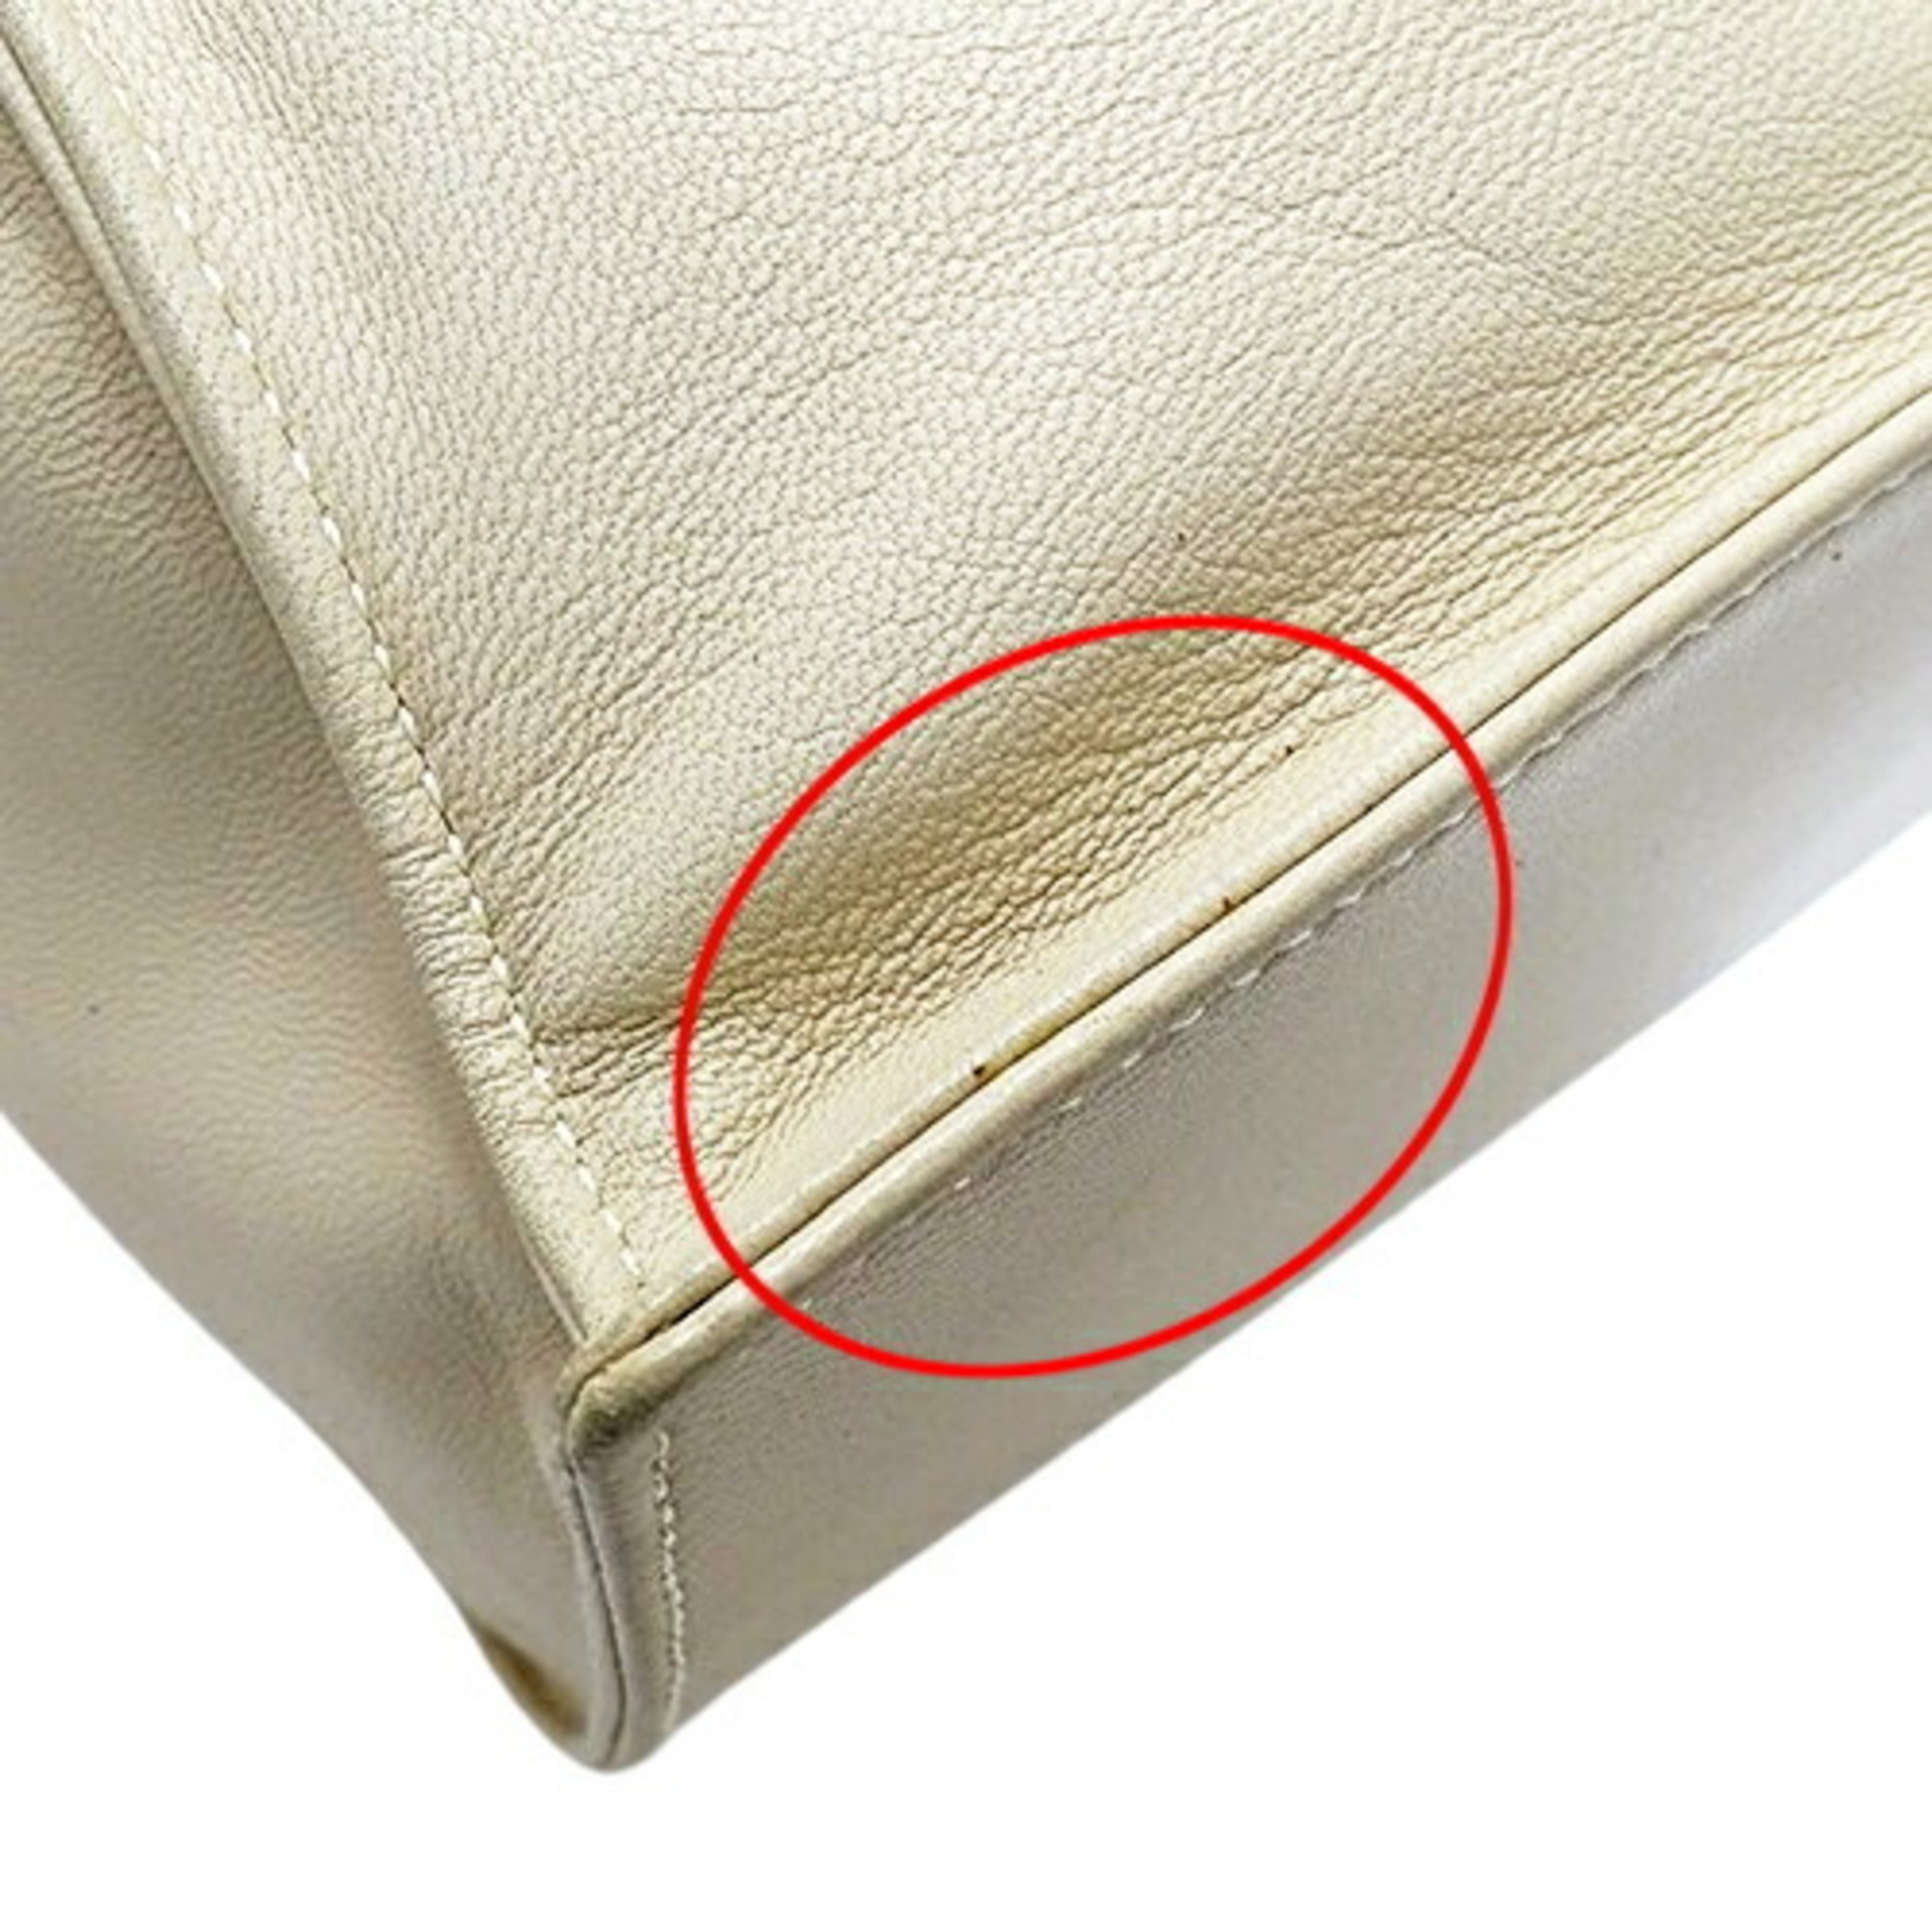 LOEWE bag ladies brand shoulder leather ivory white